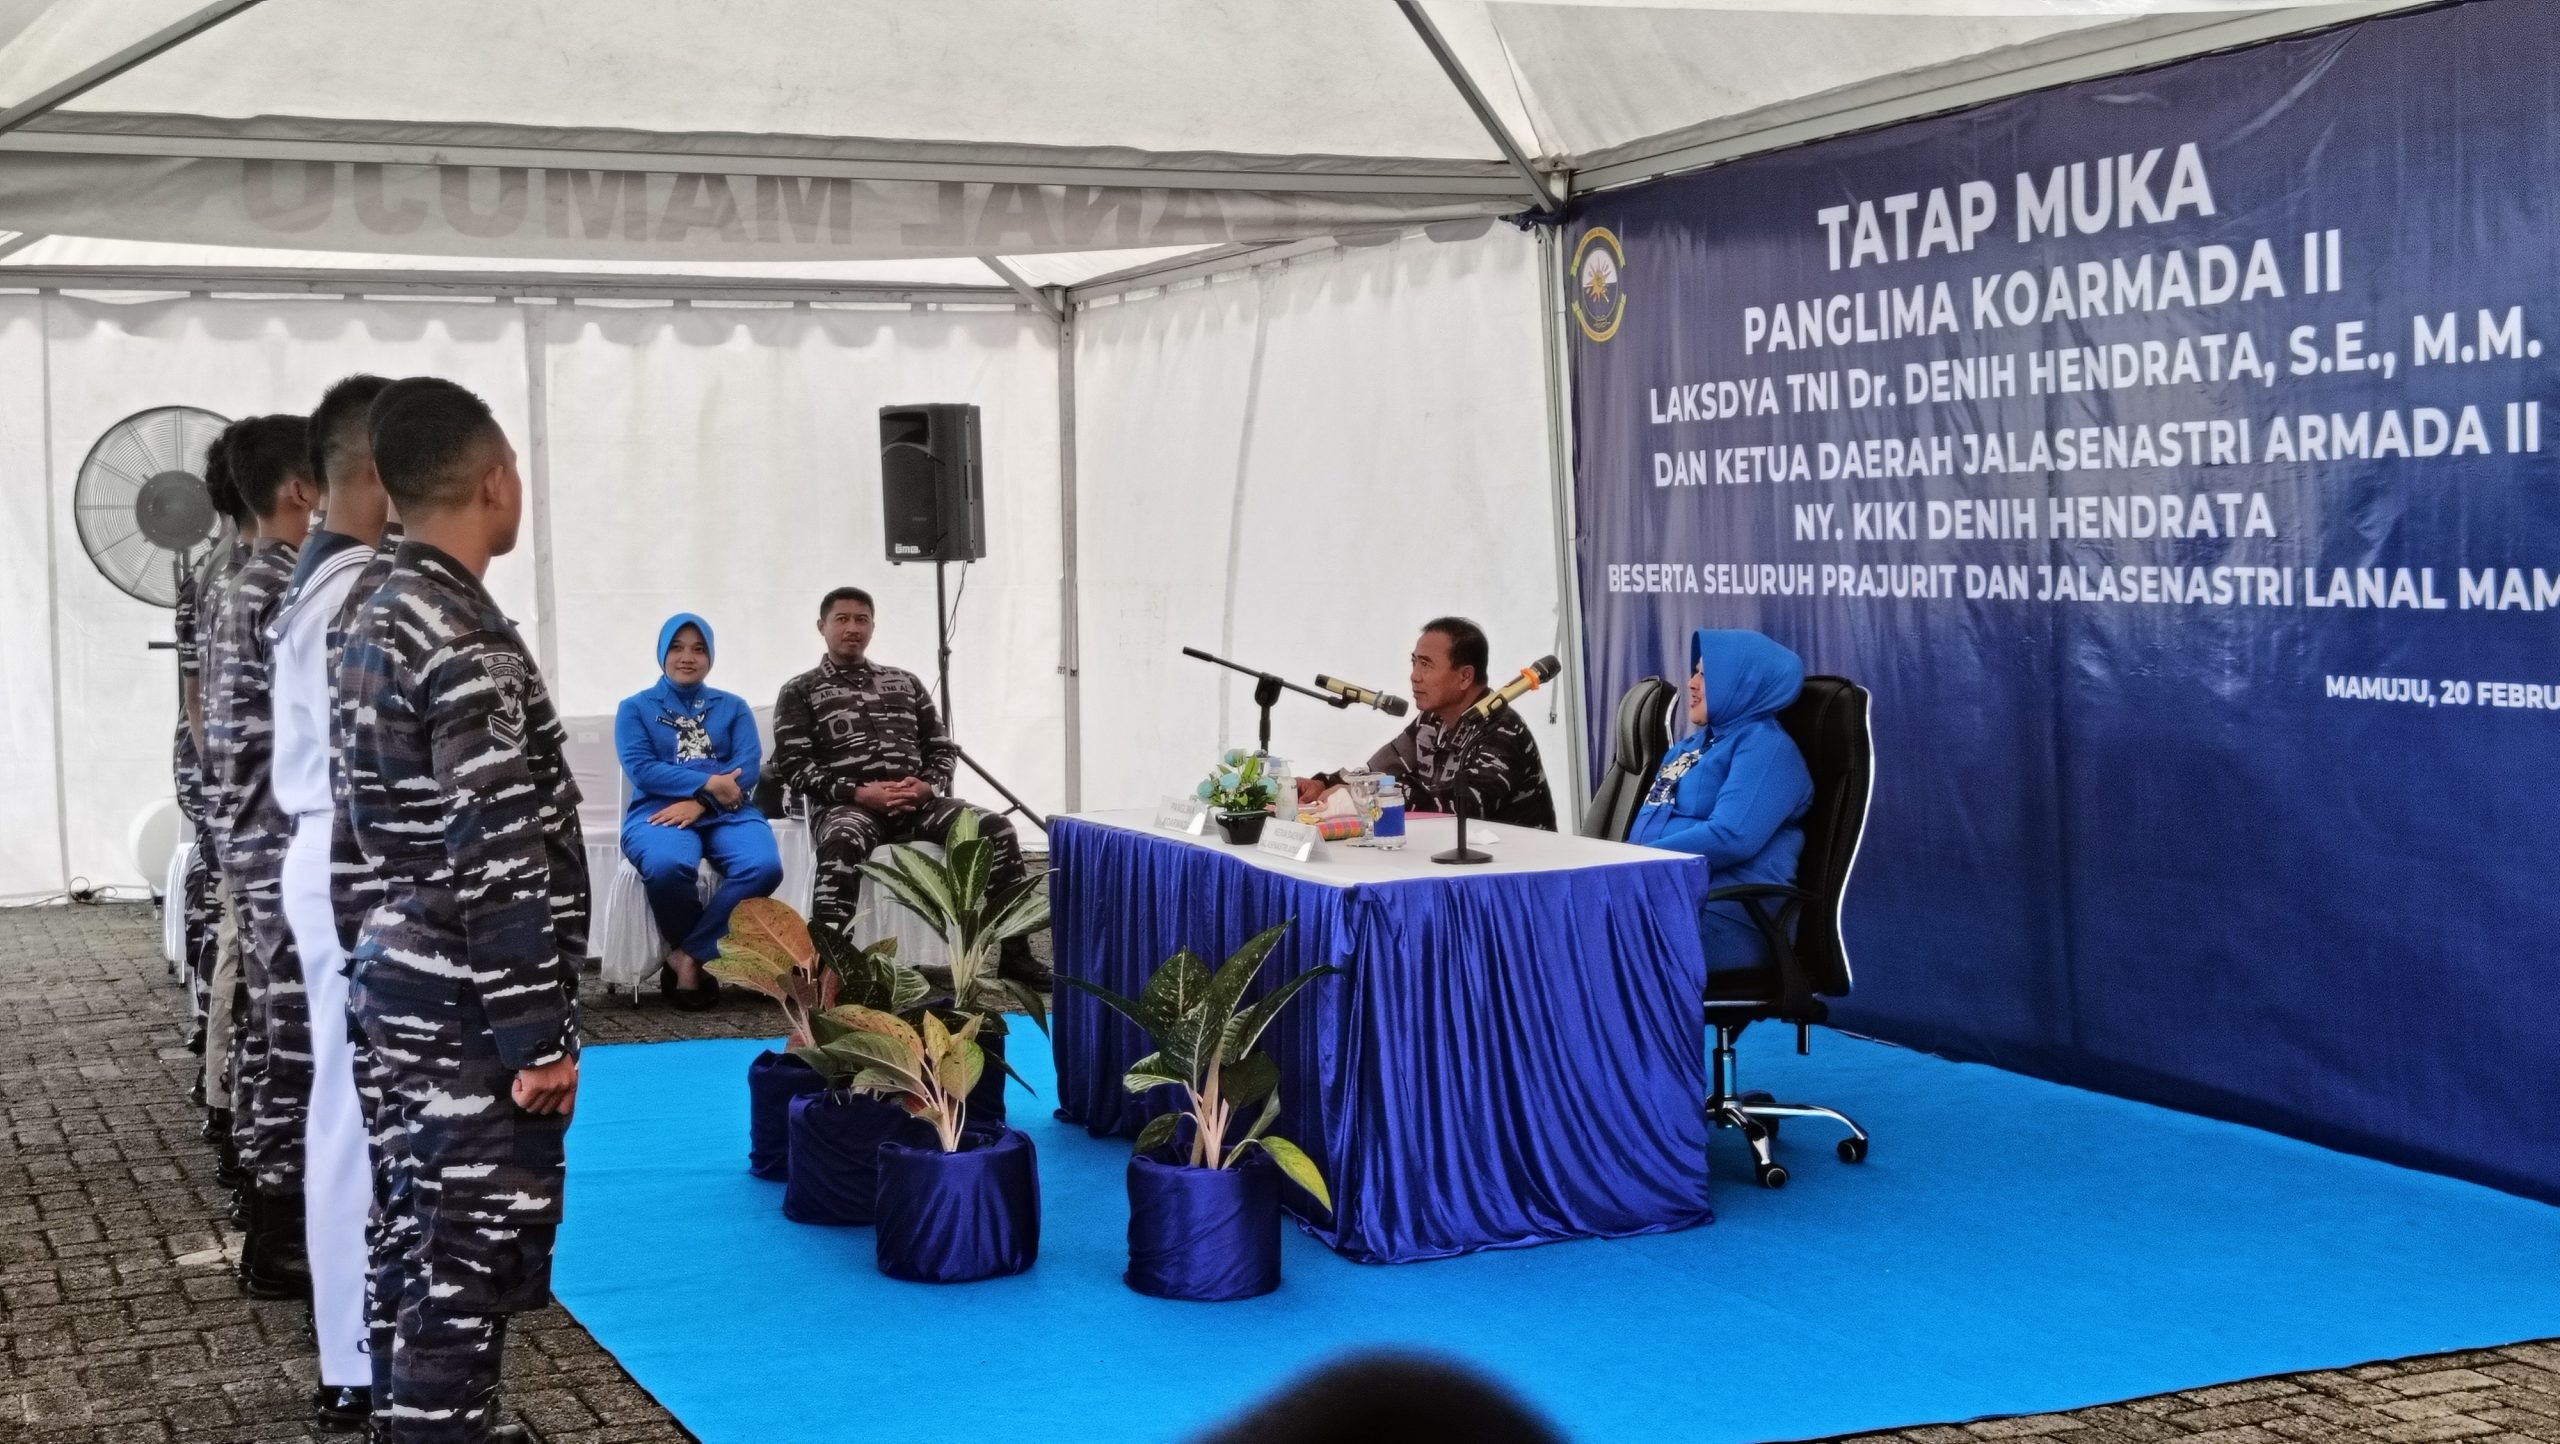 Berikan Pengarahan di Lanal Mamuju, Pangkoarmada II: TNI AL Harus Terdepan Hadapi Konflik Horizontal